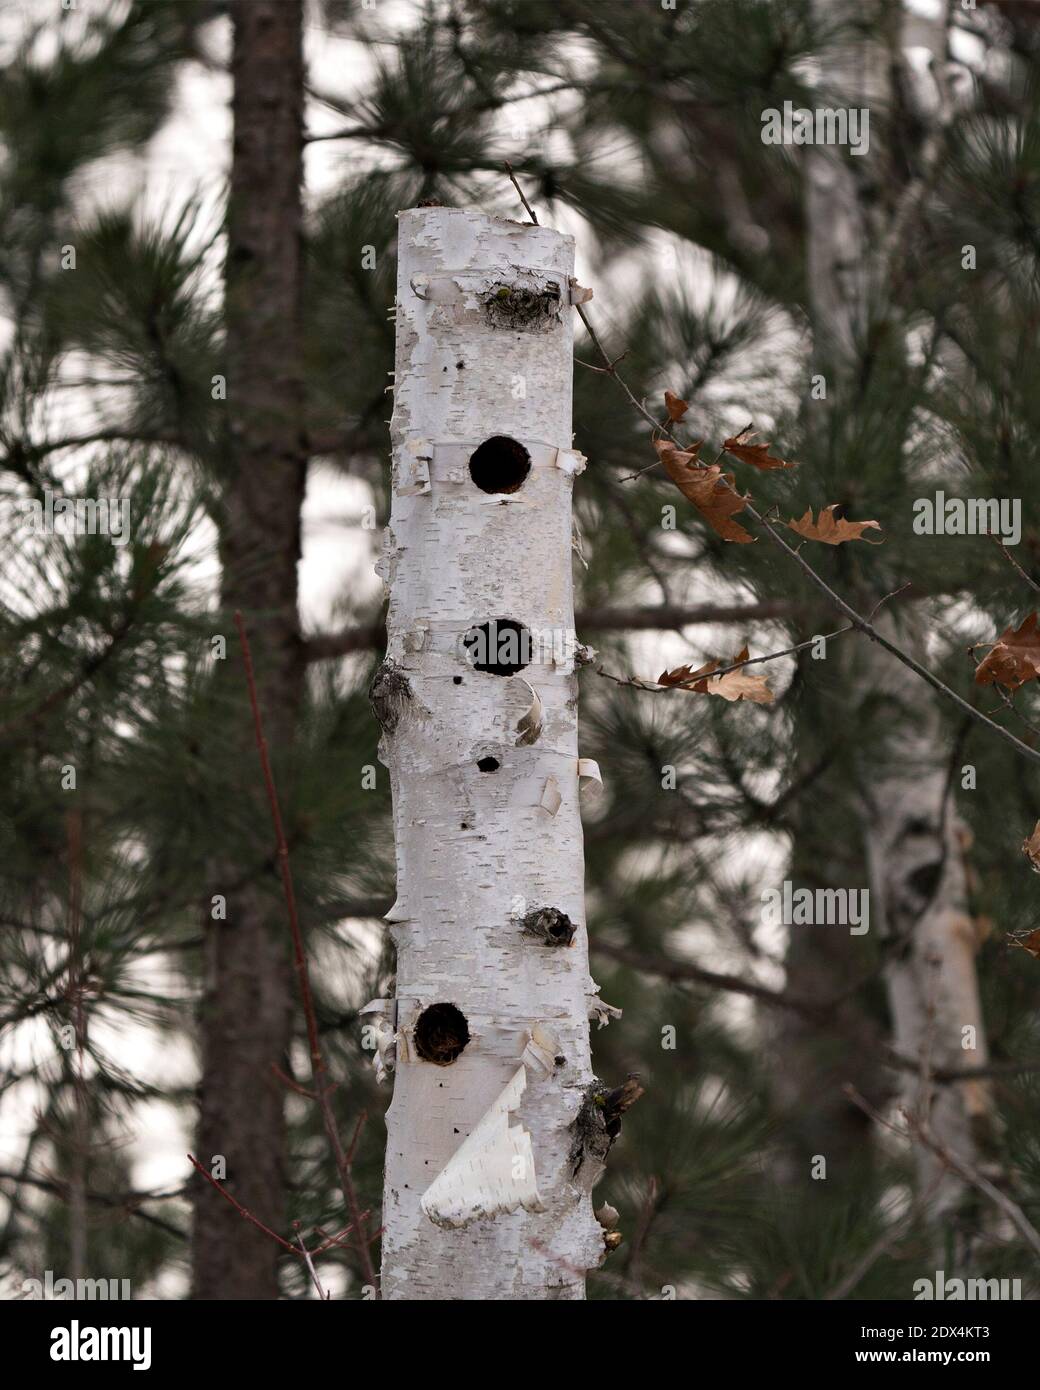 Betulla albero morto con fori vuoti naturalmente formati nella foresta con un albero sfocato di pino sfondo immagine. Immagine. Verticale. Foto Stock